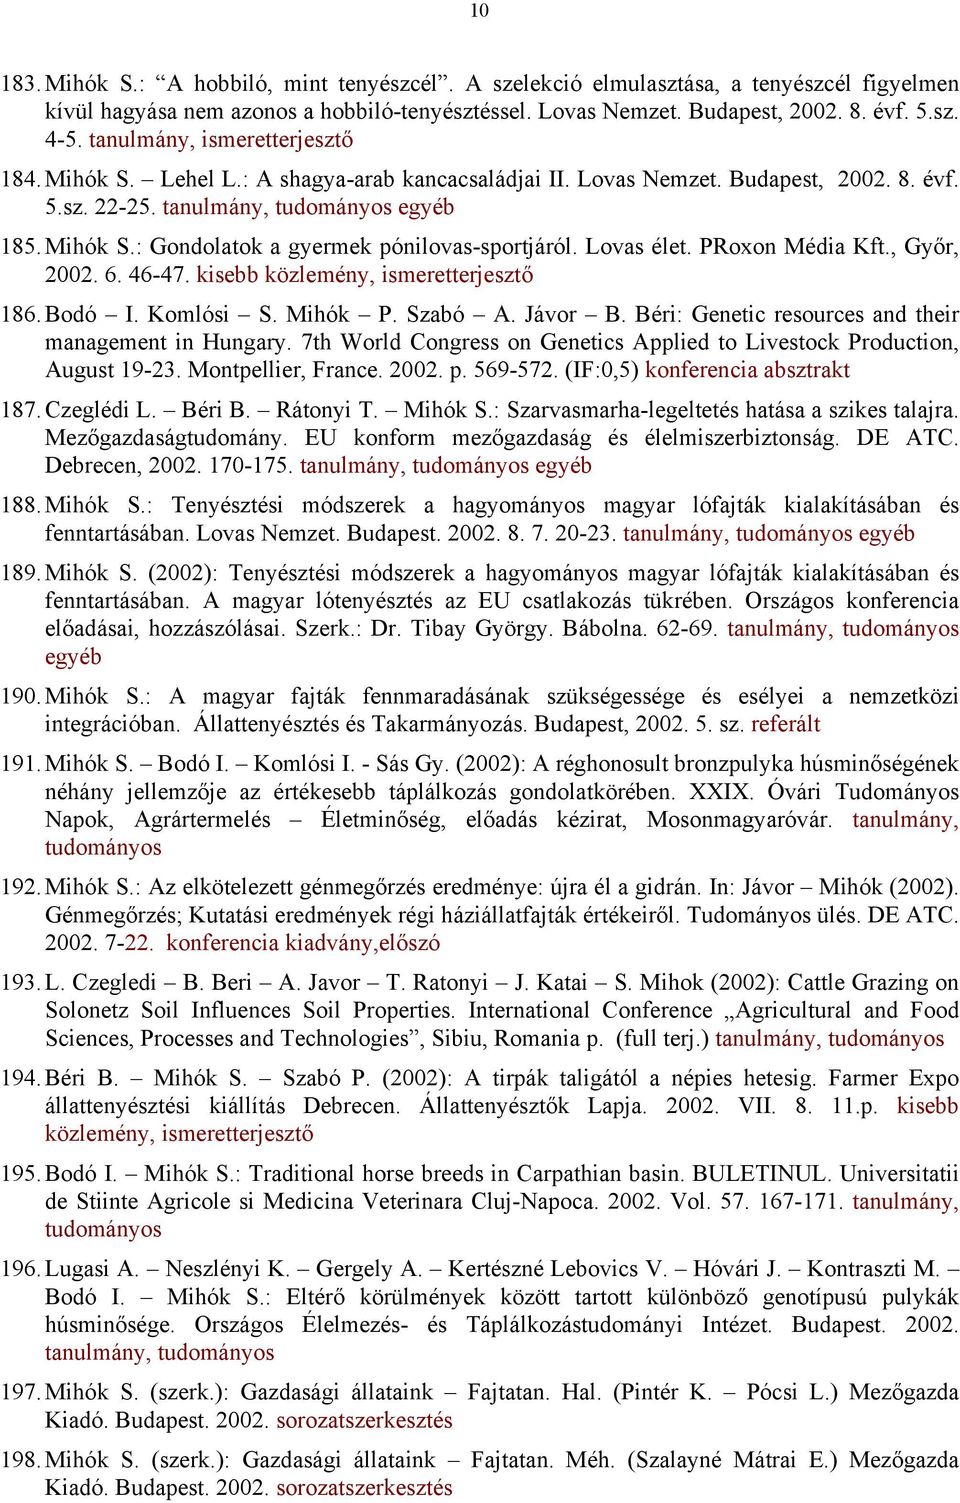 Lovas élet. PRoxon Média Kft., Győr, 2002. 6. 46-47. kisebb 186. Bodó I. Komlósi S. Mihók P. Szabó A. Jávor B. Béri: Genetic resources and their management in Hungary.